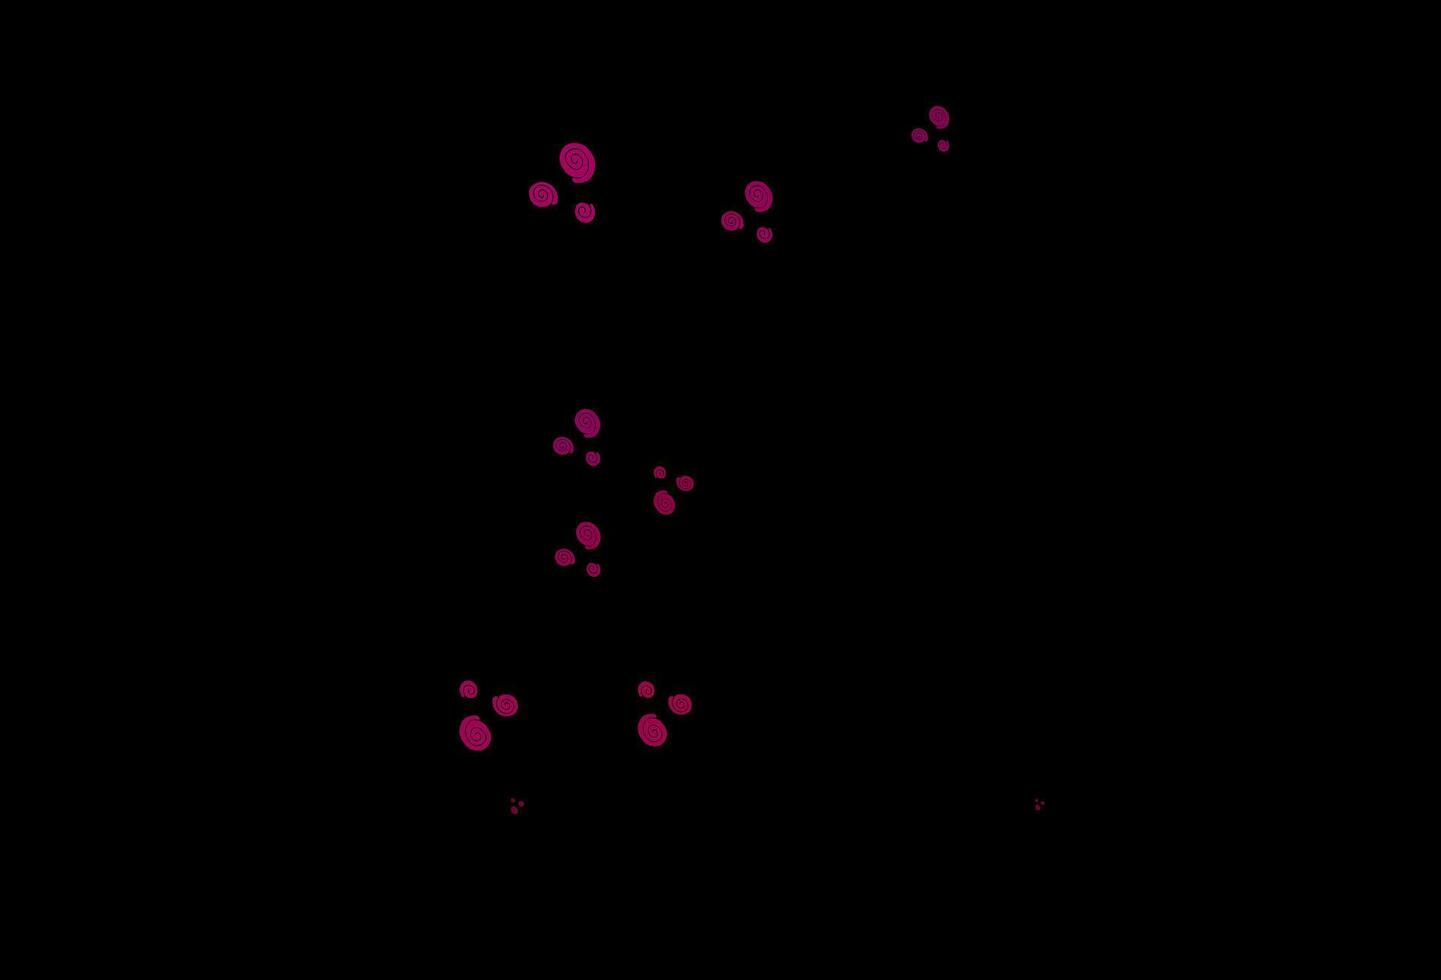 modelo de vetor rosa escuro com linhas abstratas.